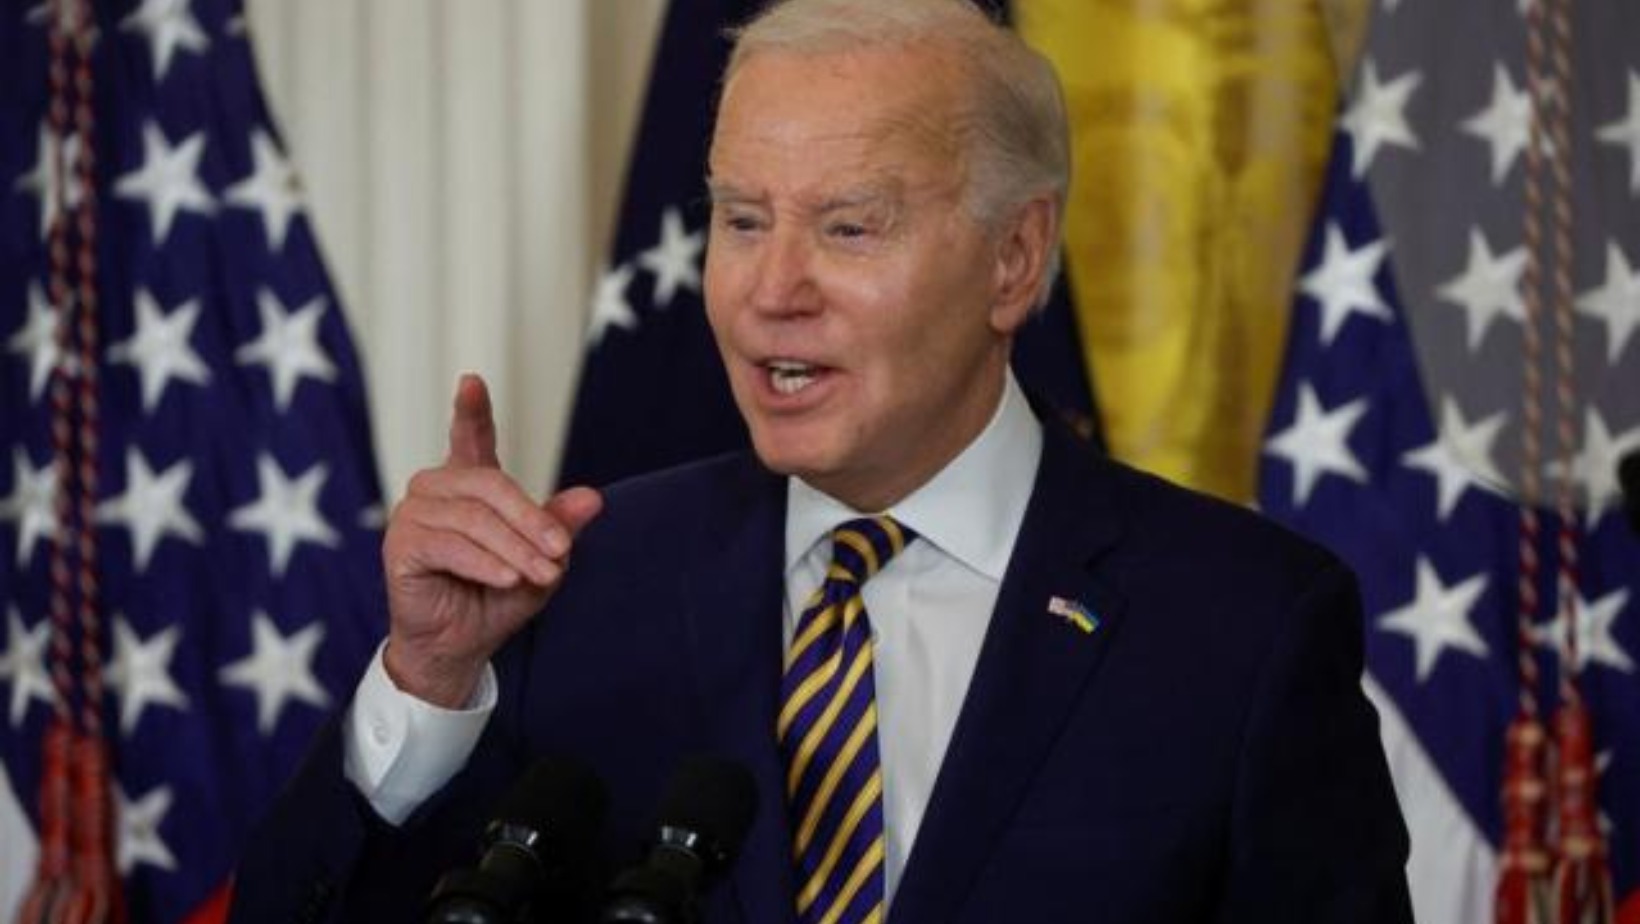 El presidente Joe Biden cuestionó el jueves firmemente que hubiera retenido y compartido "intencionalmente" materiales clasificados, como se dijo en un informe publicado ese mismo día. Foto: Fuente Externa